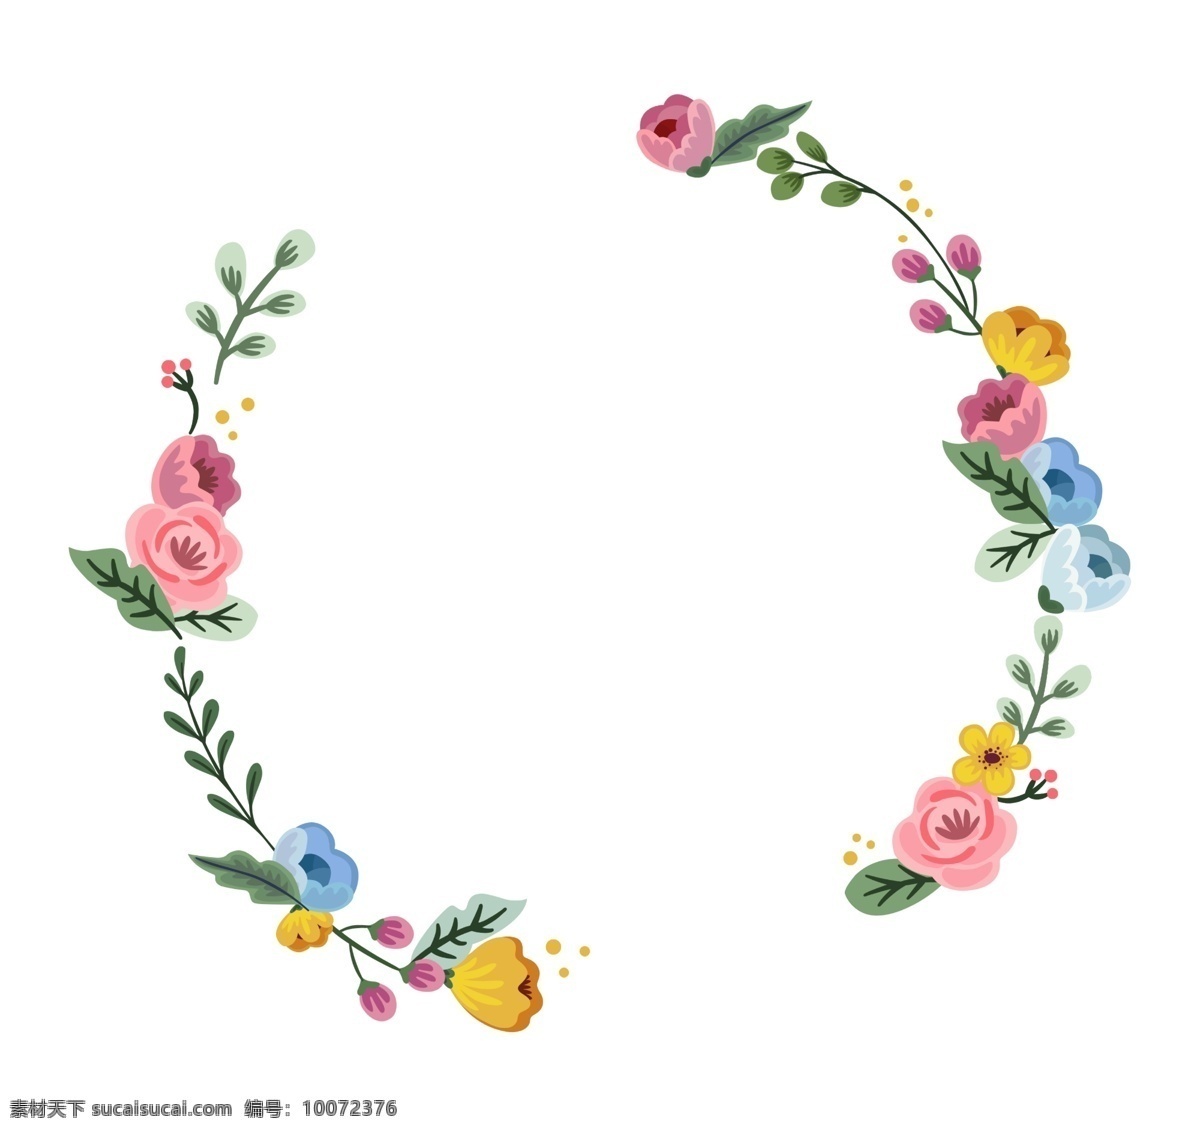 花枝 装饰 花环 边框 花枝花环 花环装饰 彩色花朵 花卉 植物 枝条 春天的花环 创意边框 卡通花环插画